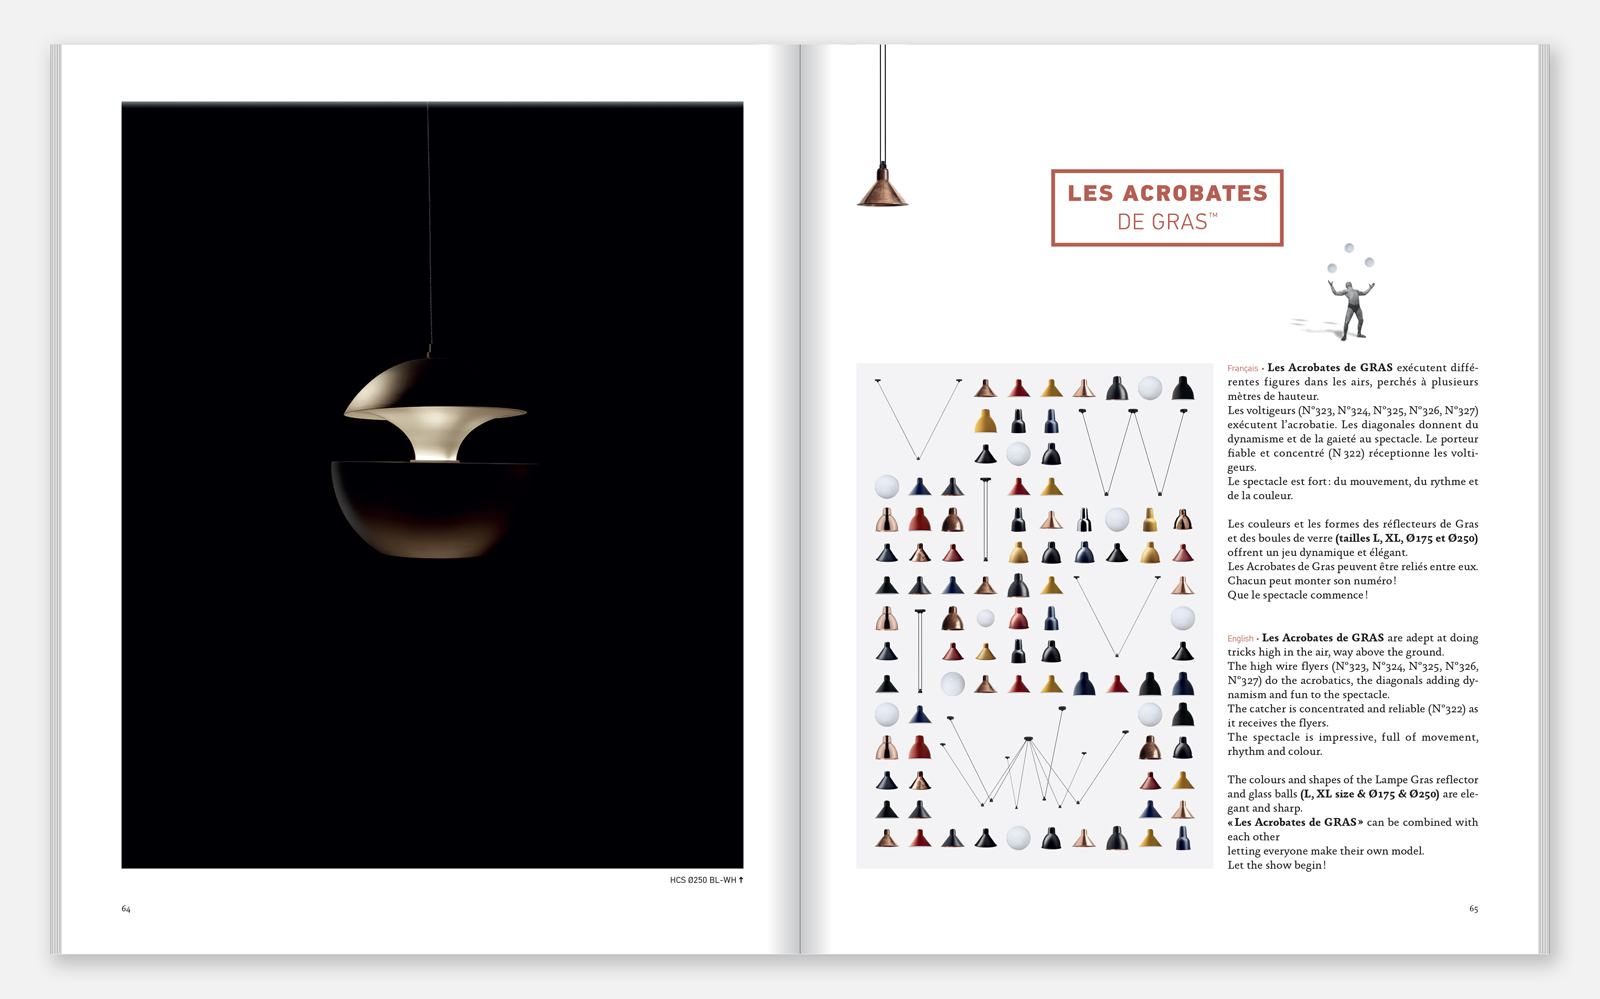 Webdesign pour DCW éditions Graphic design Graphisme Paris